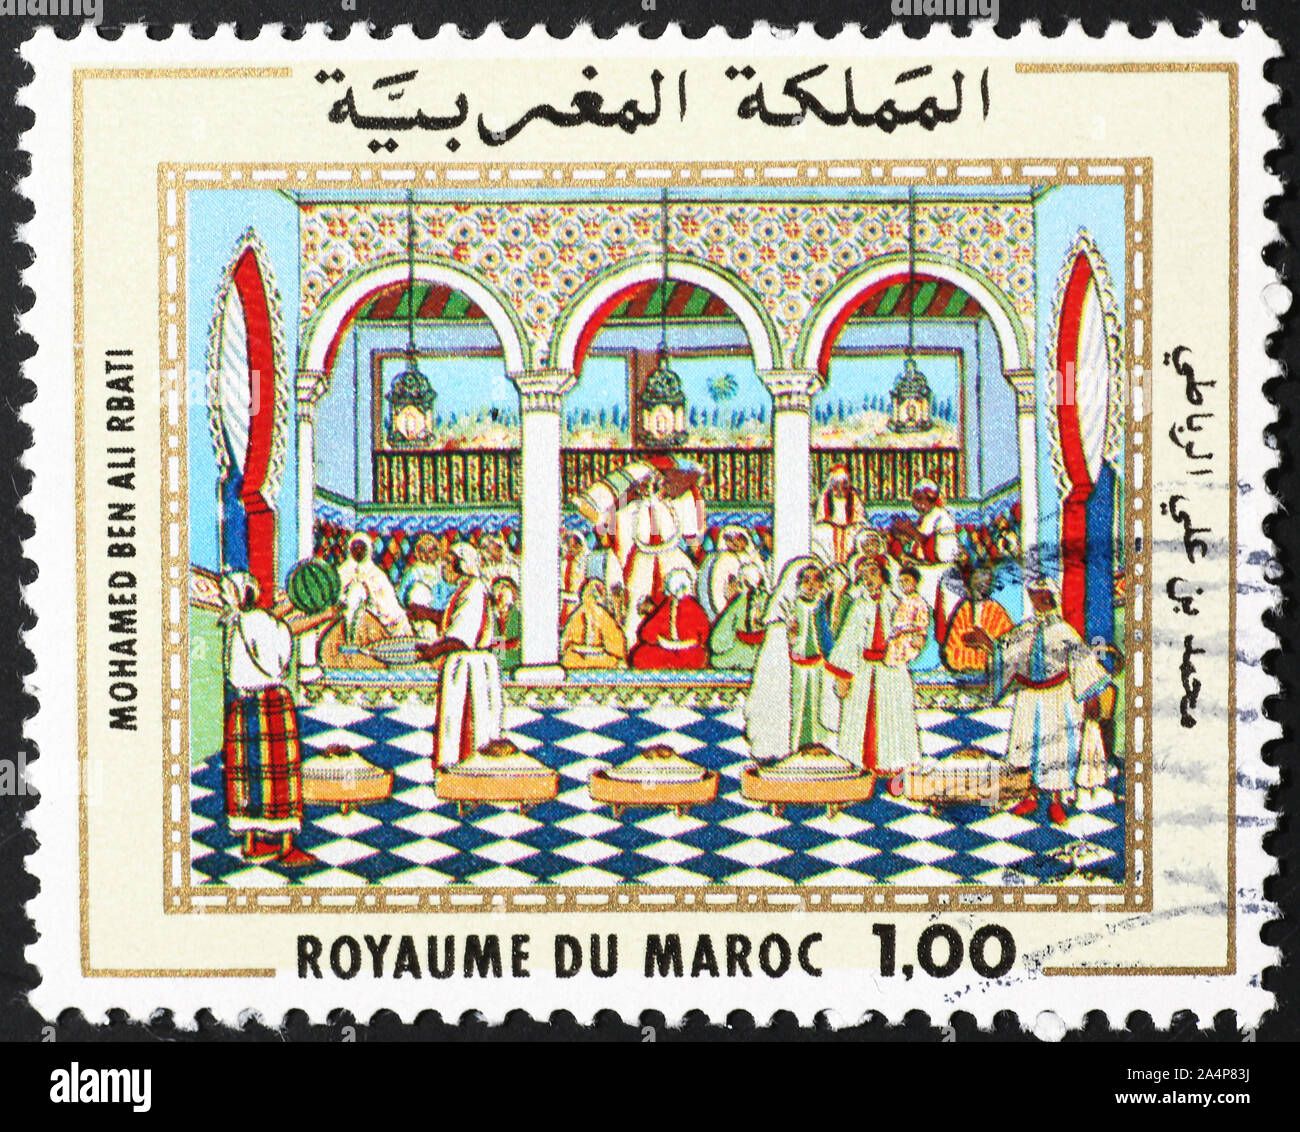 Peinture de Mohammed ben Ali Rbati sur timbre marocain Banque D'Images